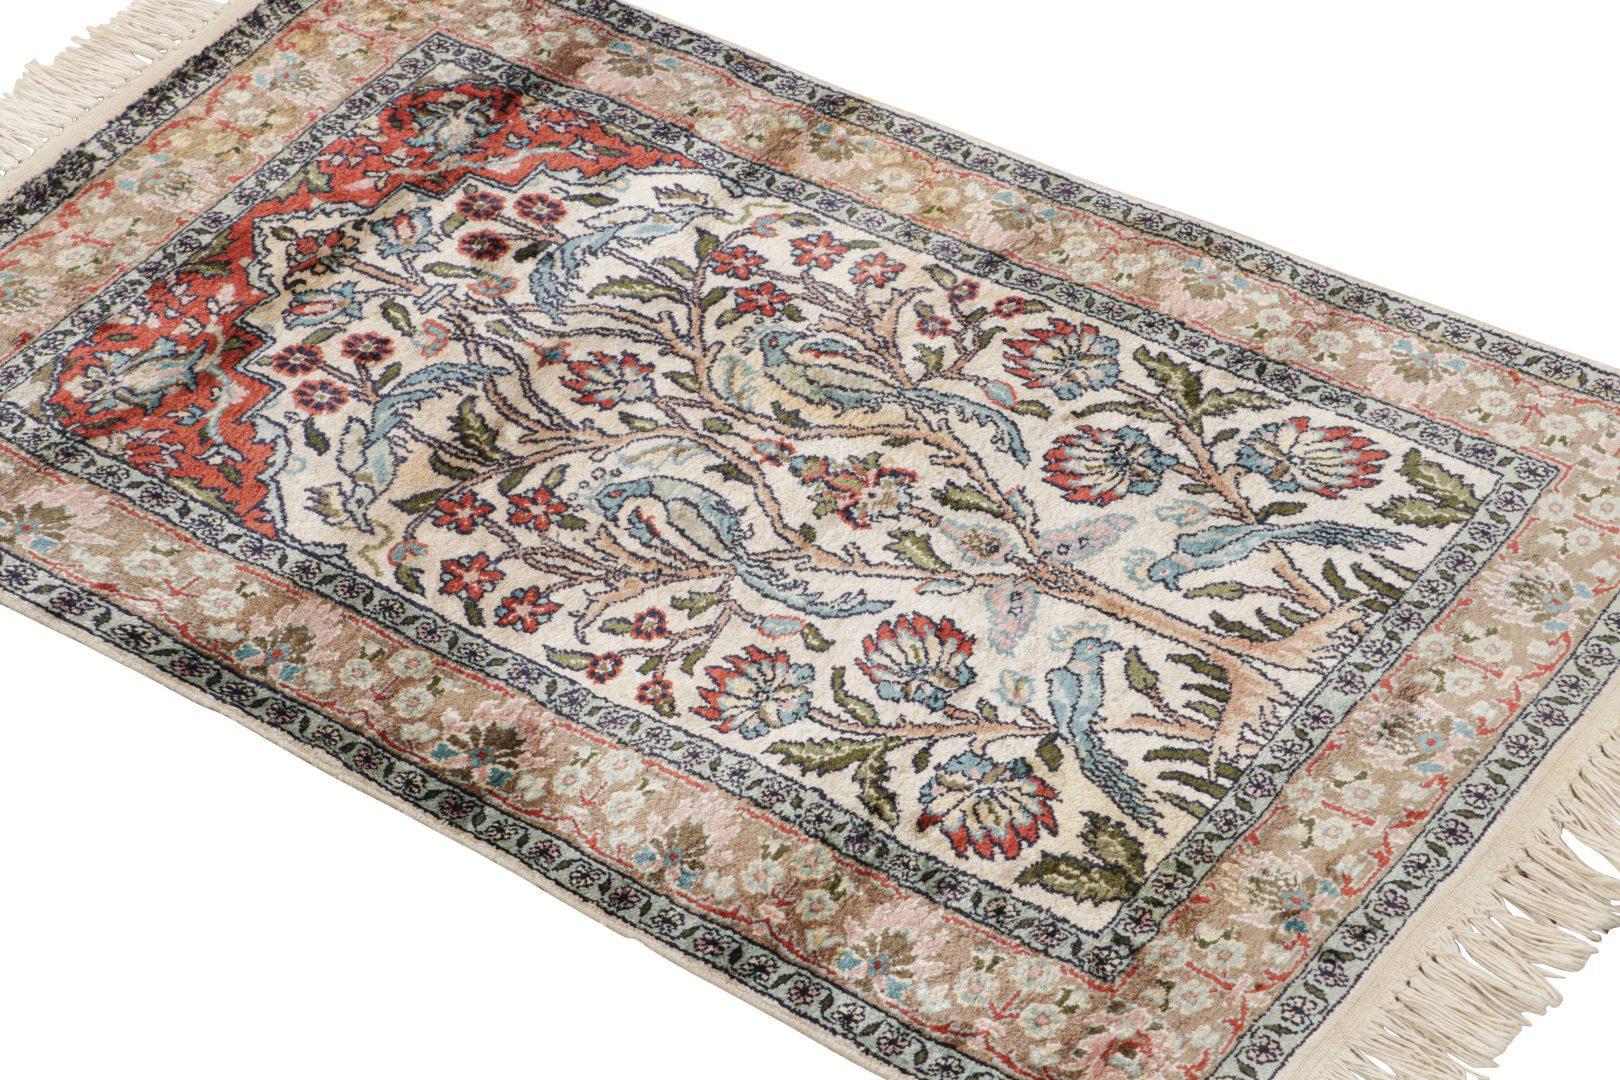 Réalisé en laine et soie nouées à la main vers 1920-1930, ce tapis ancien du Cachemire 2×3 est une nouvelle collection de tapis indiens rares de Rug & Kilim. 

Sur le Design :

Tons clairs de beige et de blanc  dans le champ et la bordure soulignent